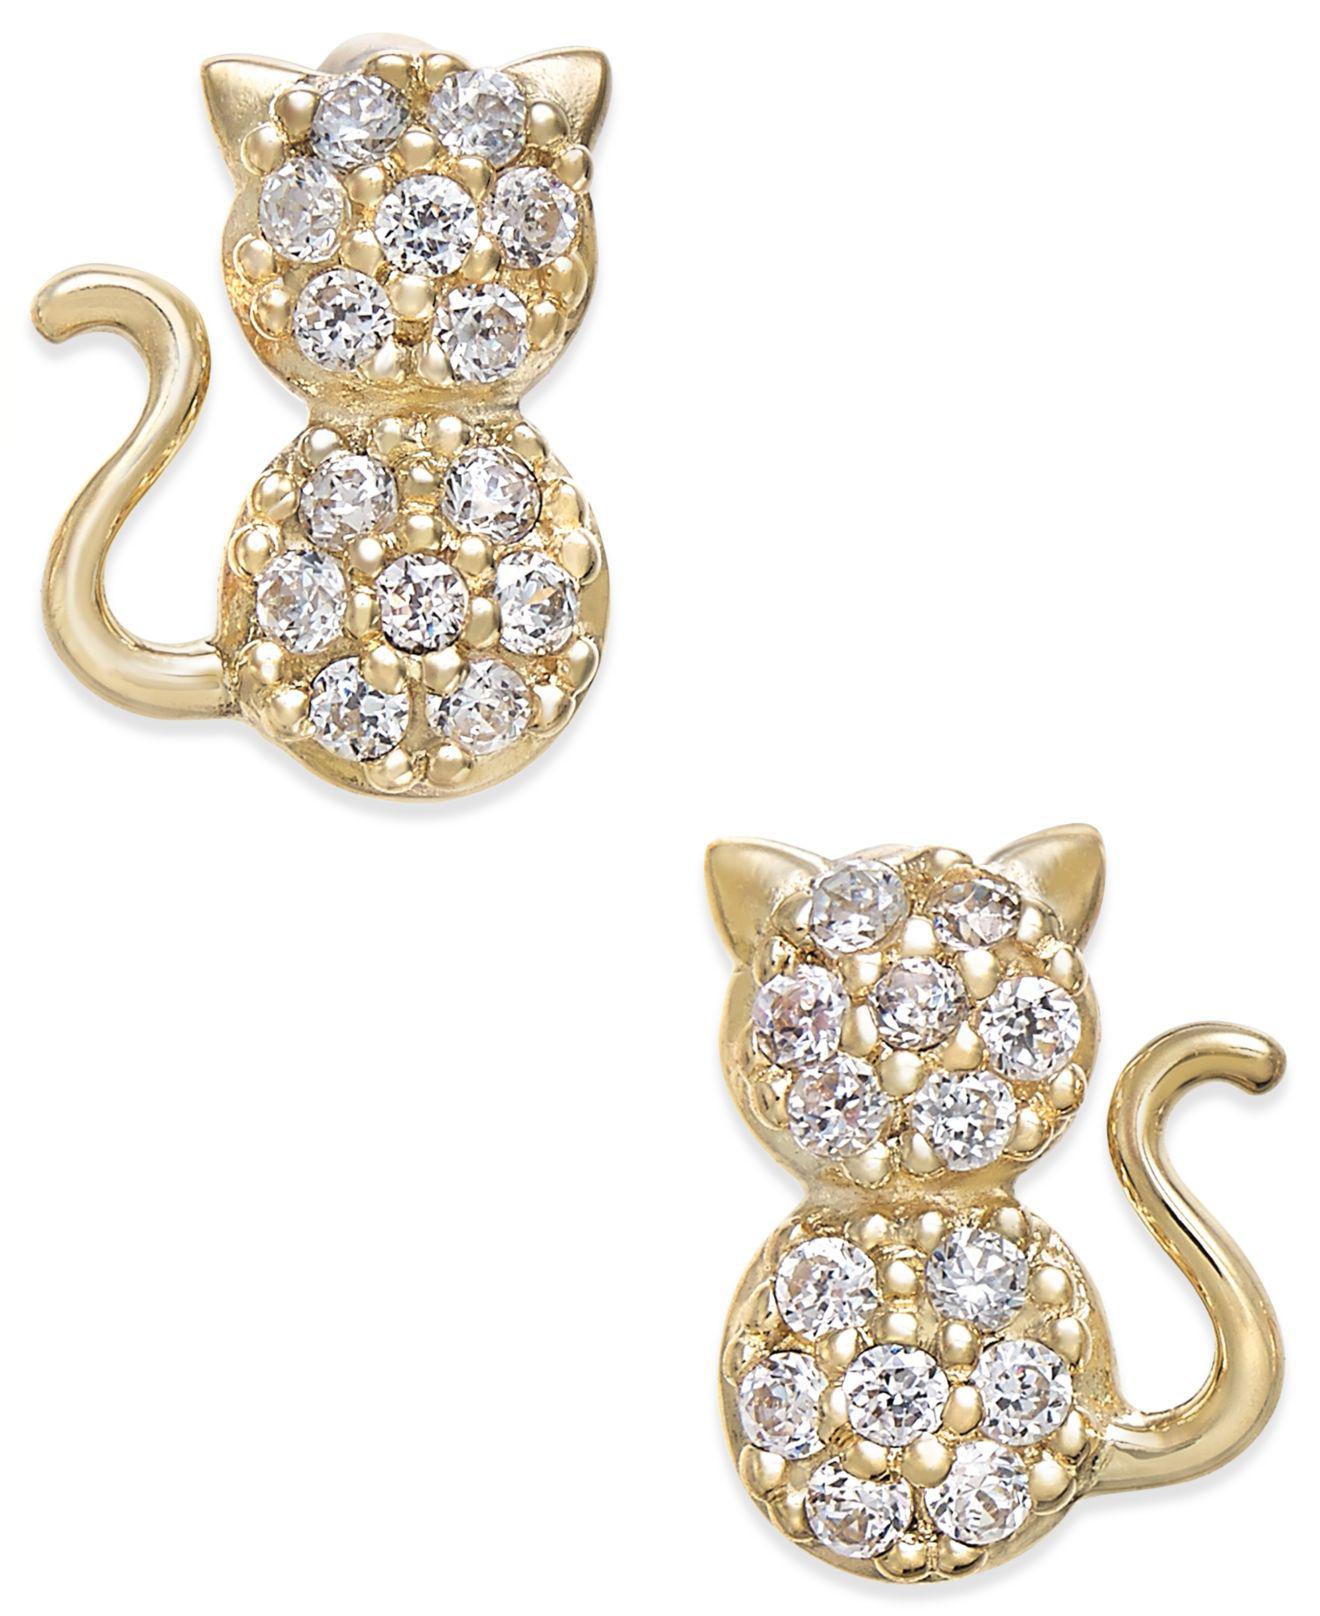  Macy s  Cubic Zirconia Kitty Cat Stud  Earrings  In 10k Gold  